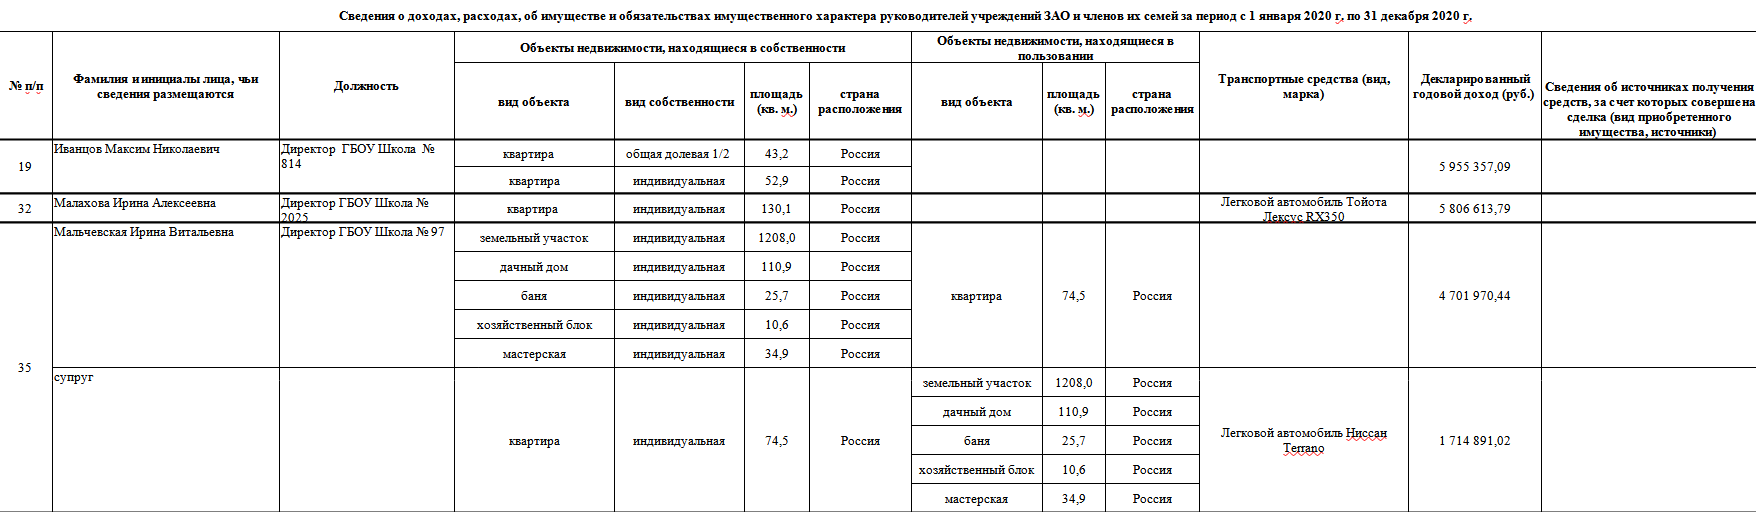 Руководители учреждений города Москвы - образовательные учреждения (все представленные сведения)